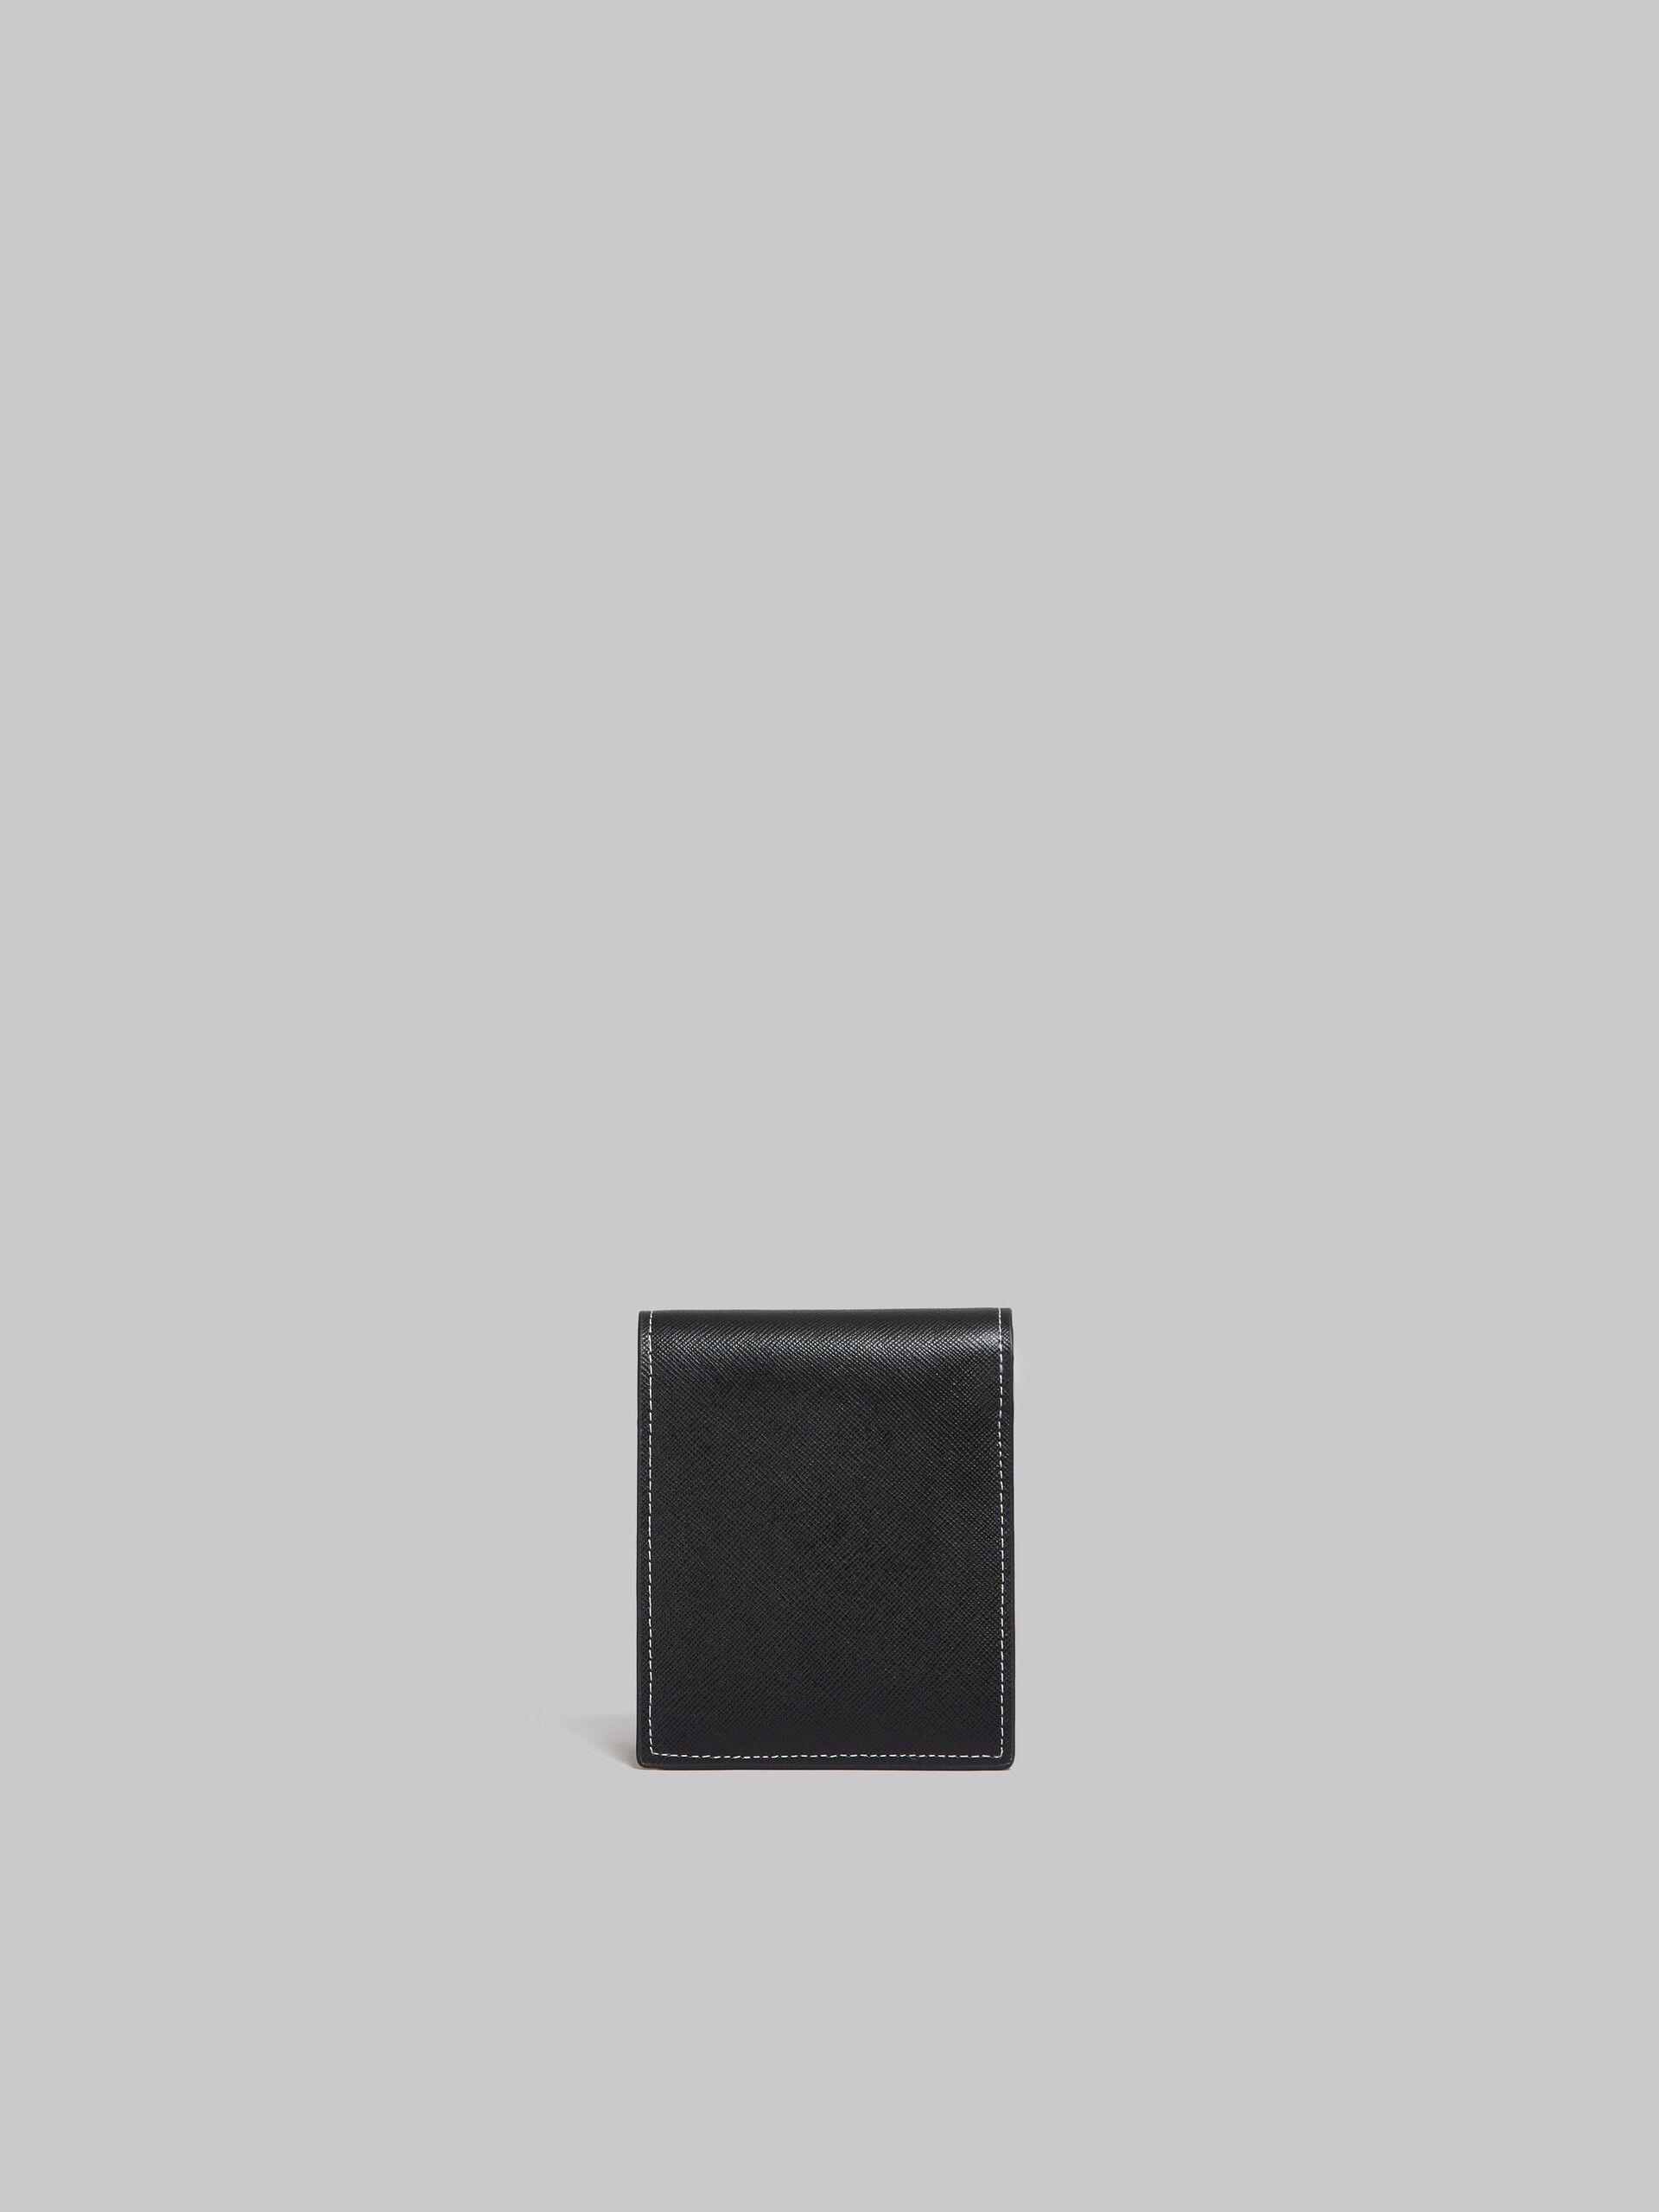 Zweifache Faltbrieftasche aus Saffiano-Leder in Grau und Blau - Brieftaschen - Image 3